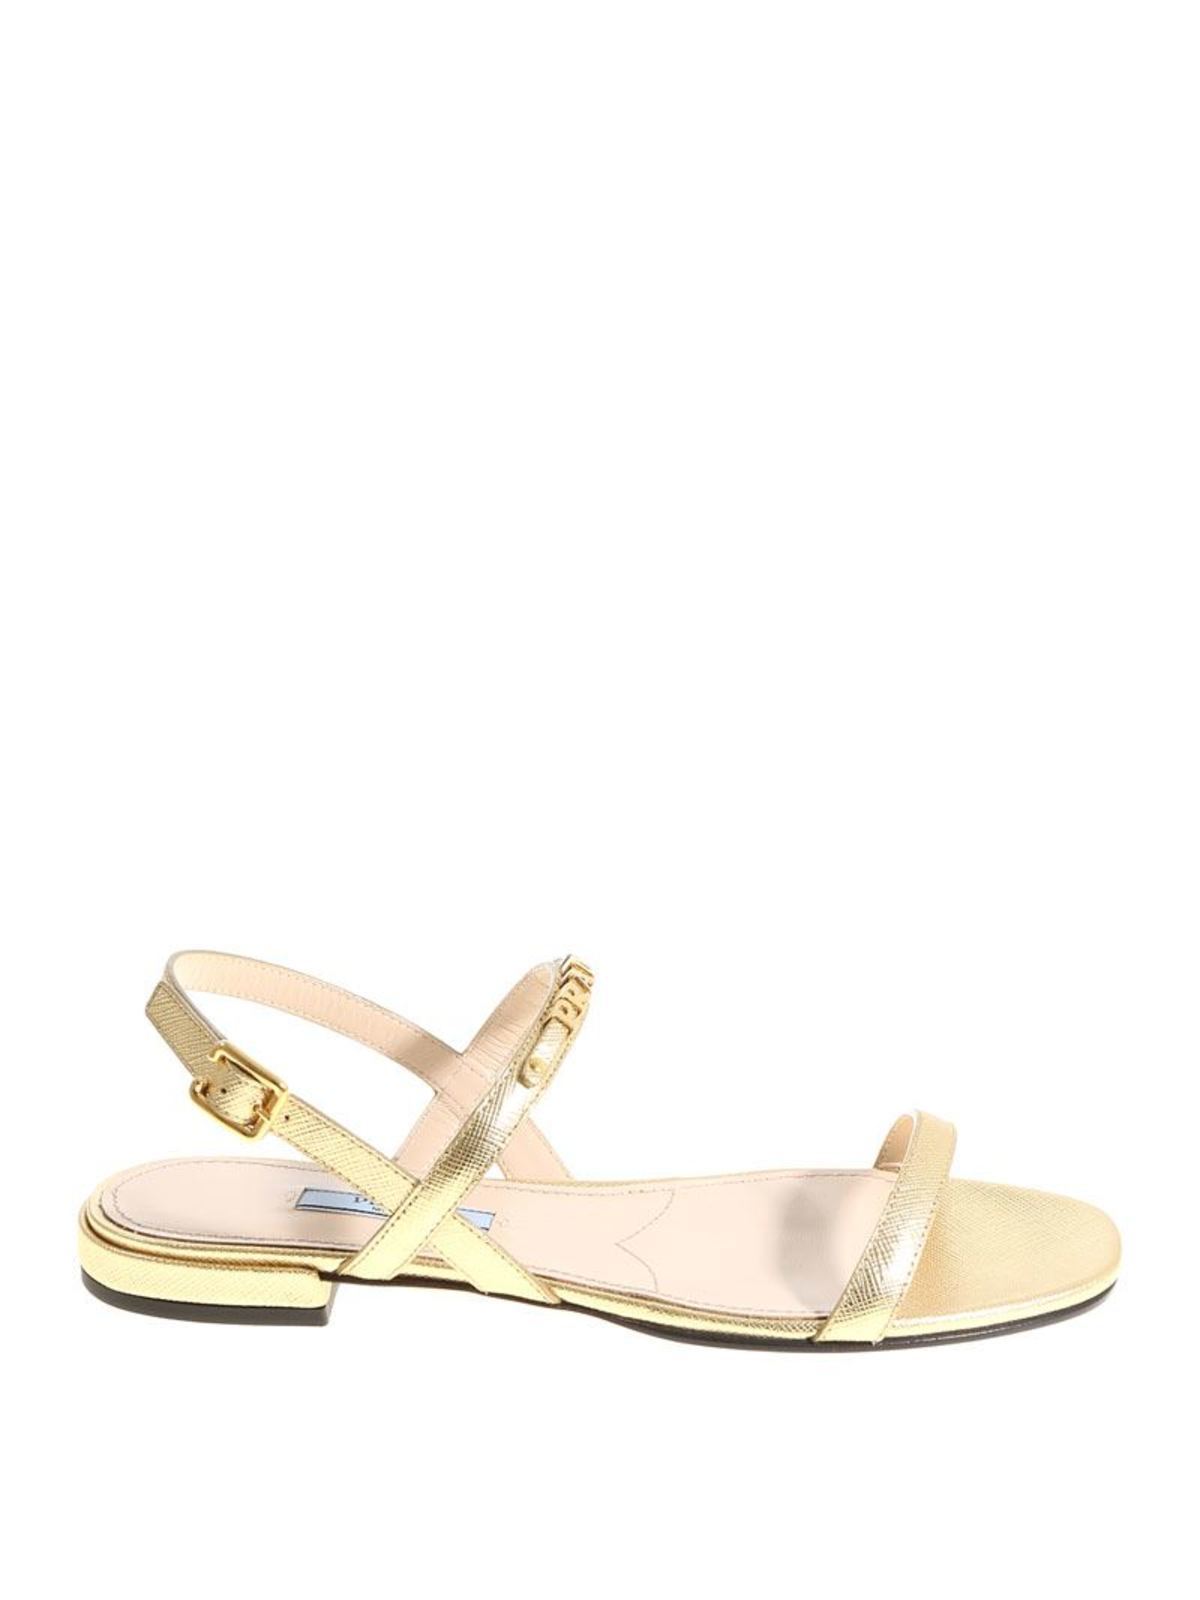 prada gold sandals